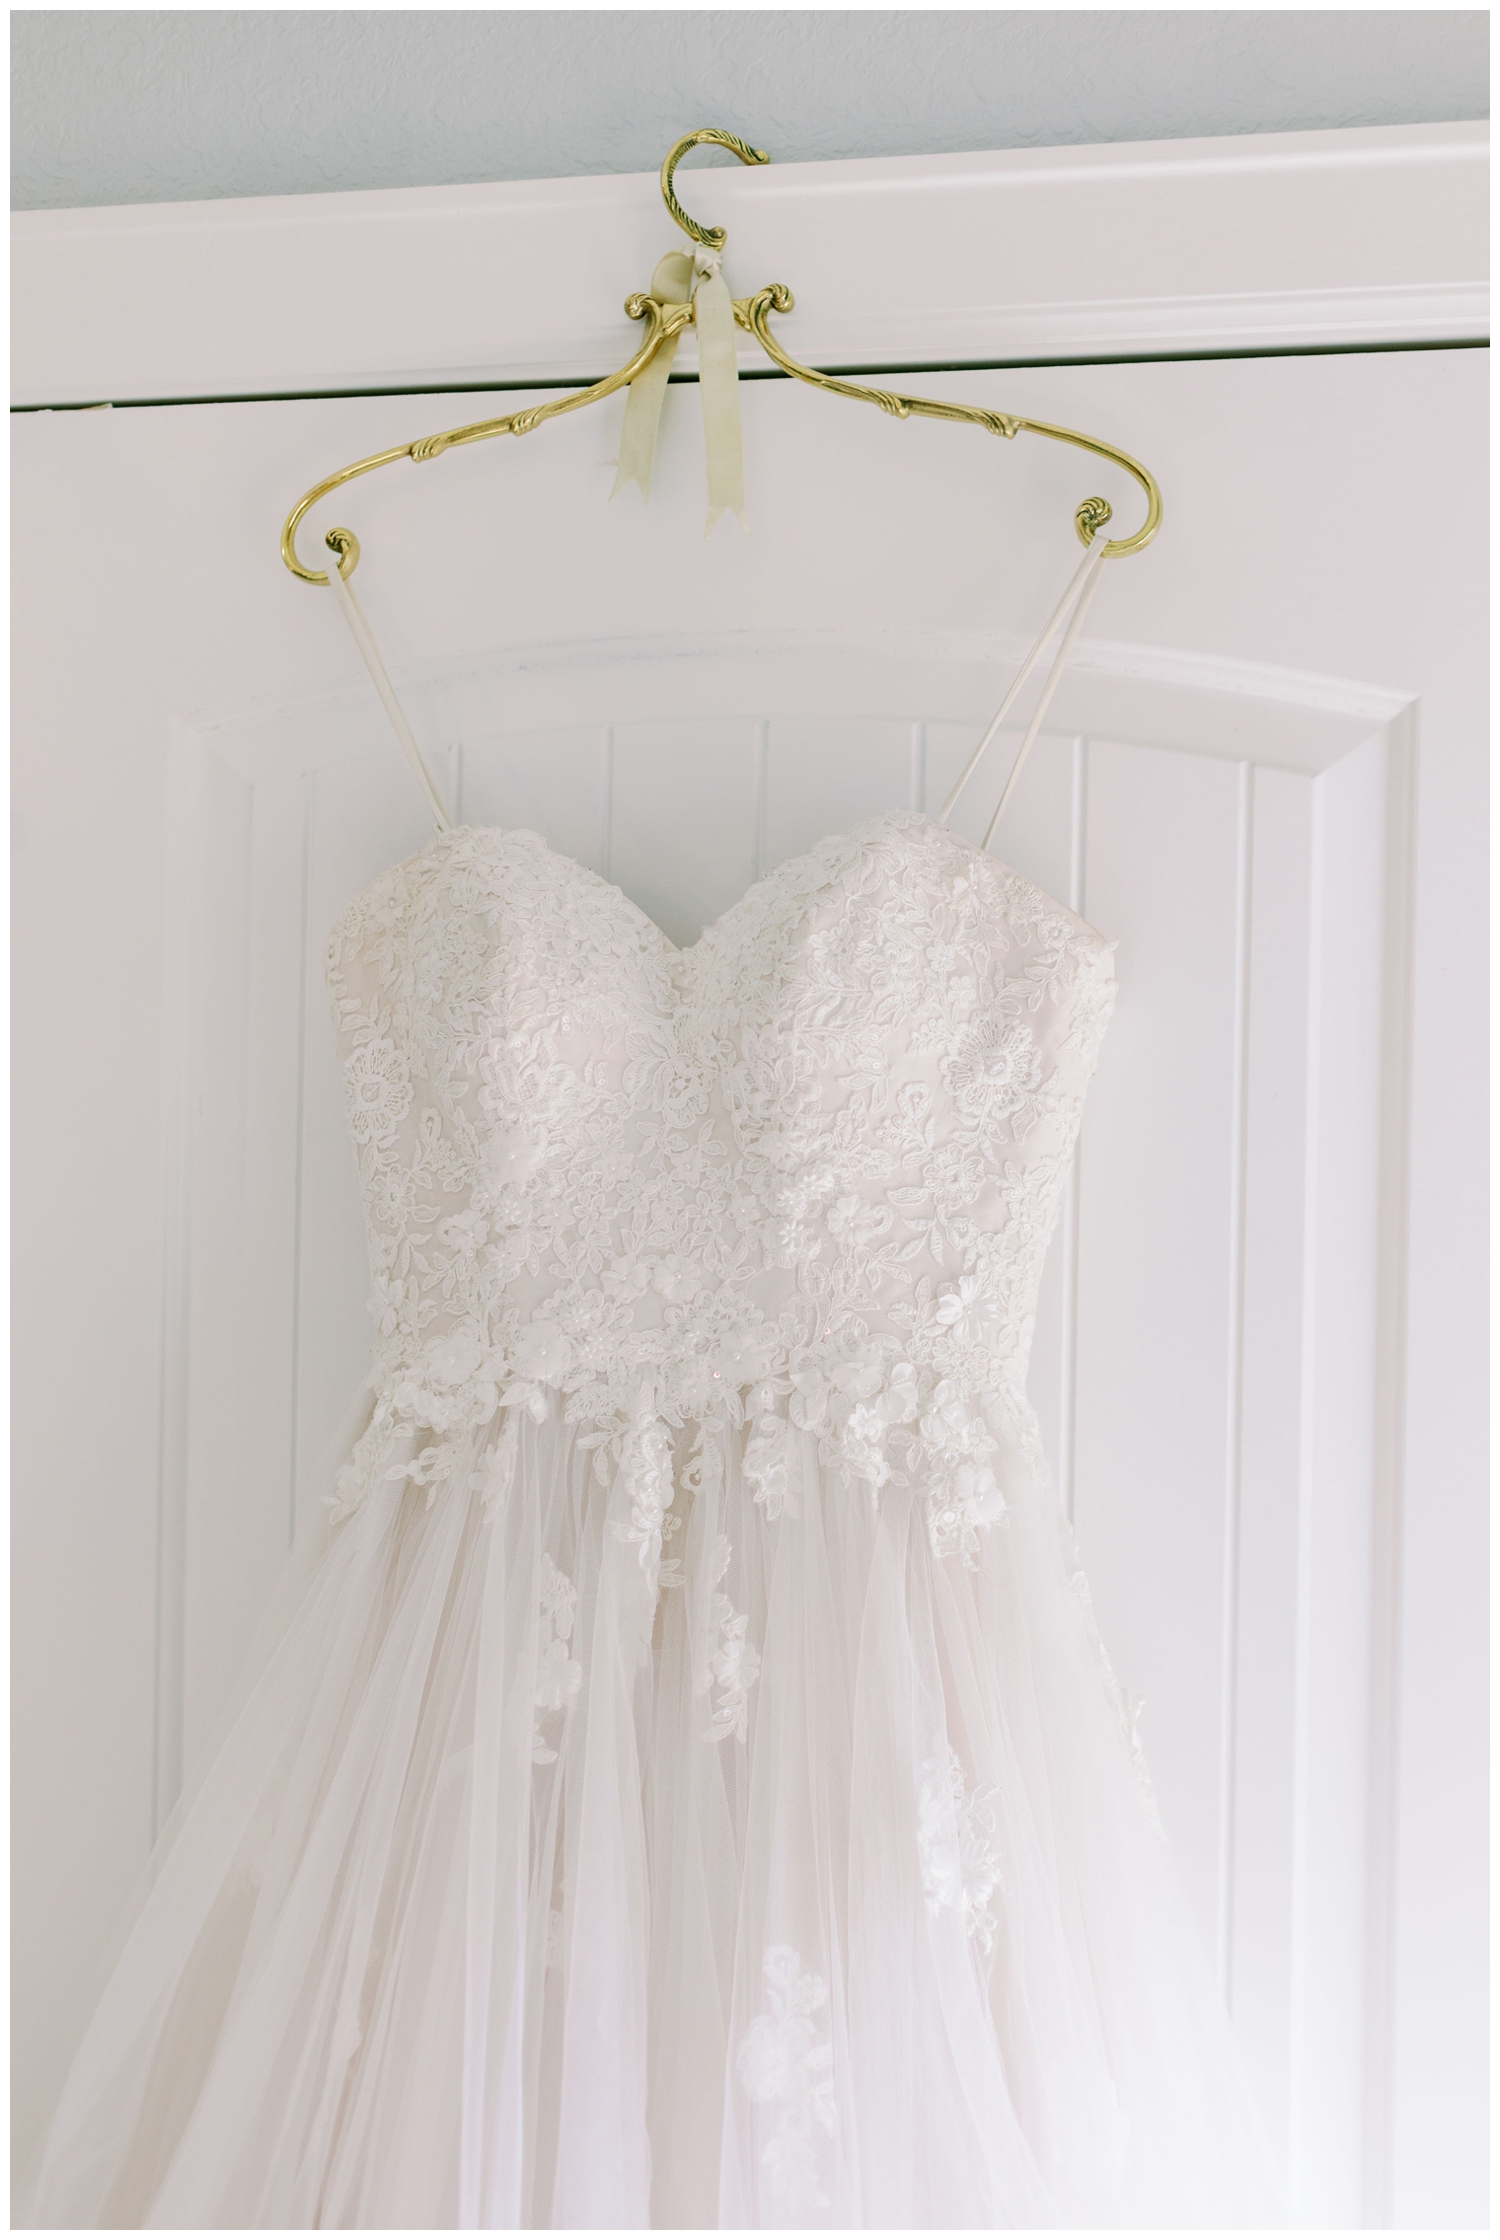 white wedding gown hanging over door with gold hangar